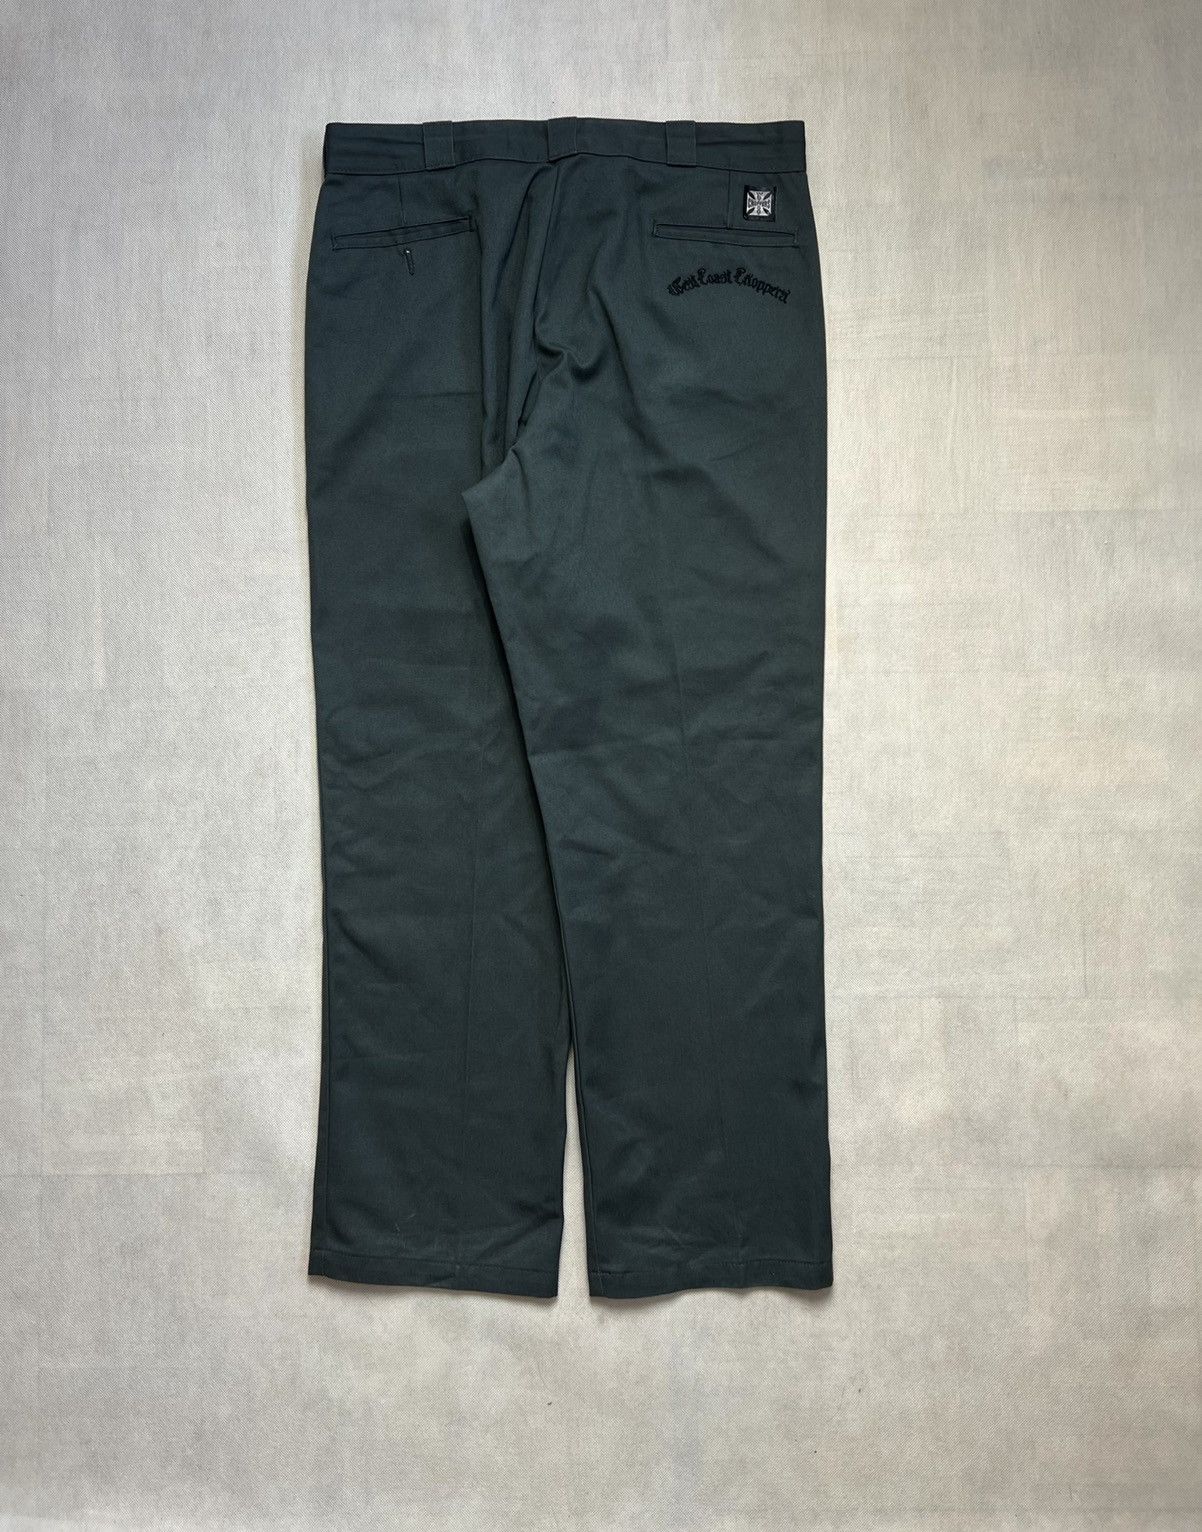 Vintage Pants Dickies x West Coast Choppers vintage trousers | Grailed